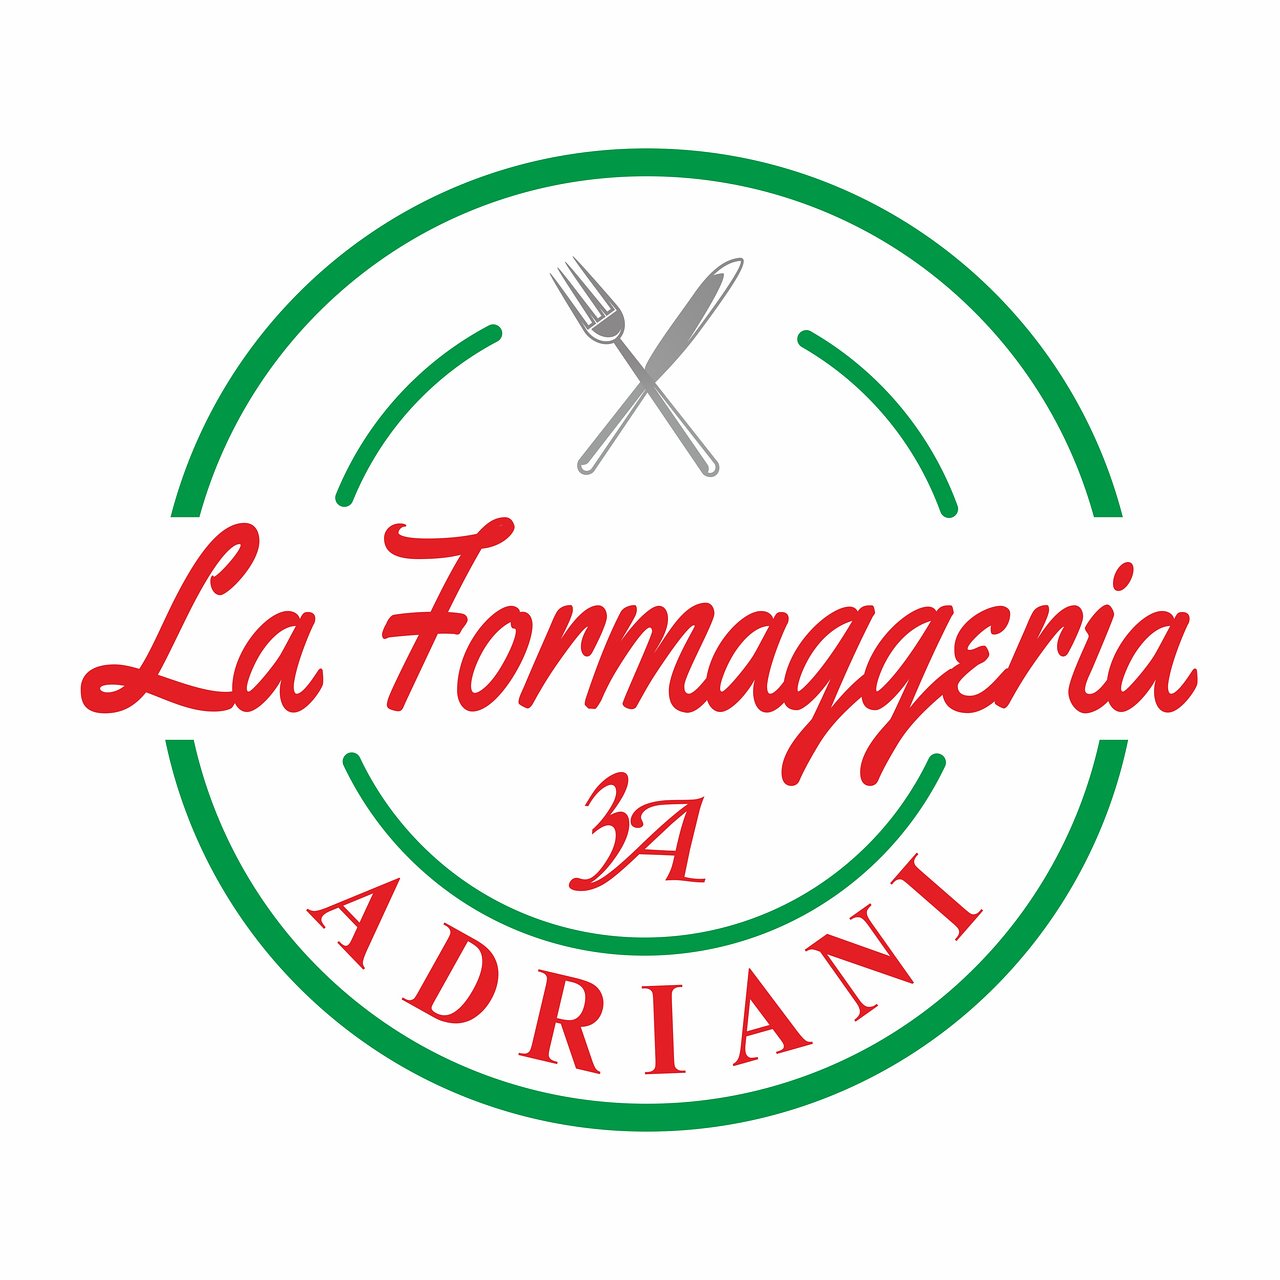 La Formaggeria Adriani, Tuscania